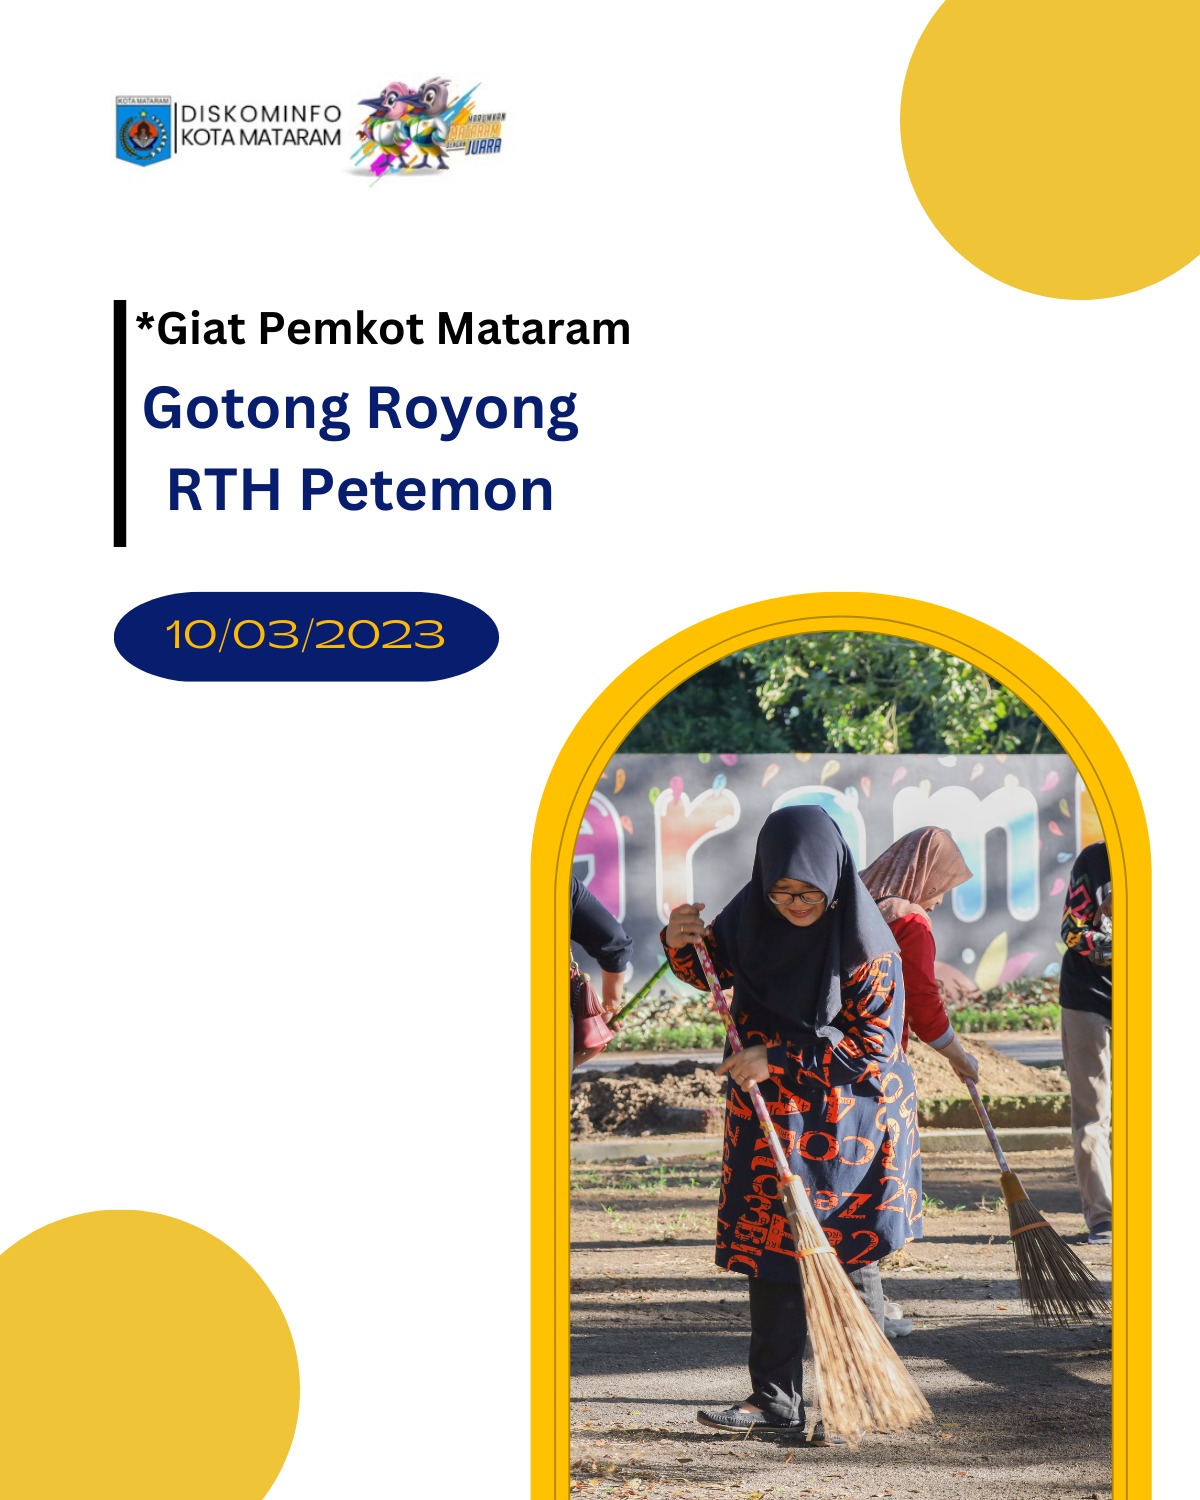 Gotong Royong RTH Petemon